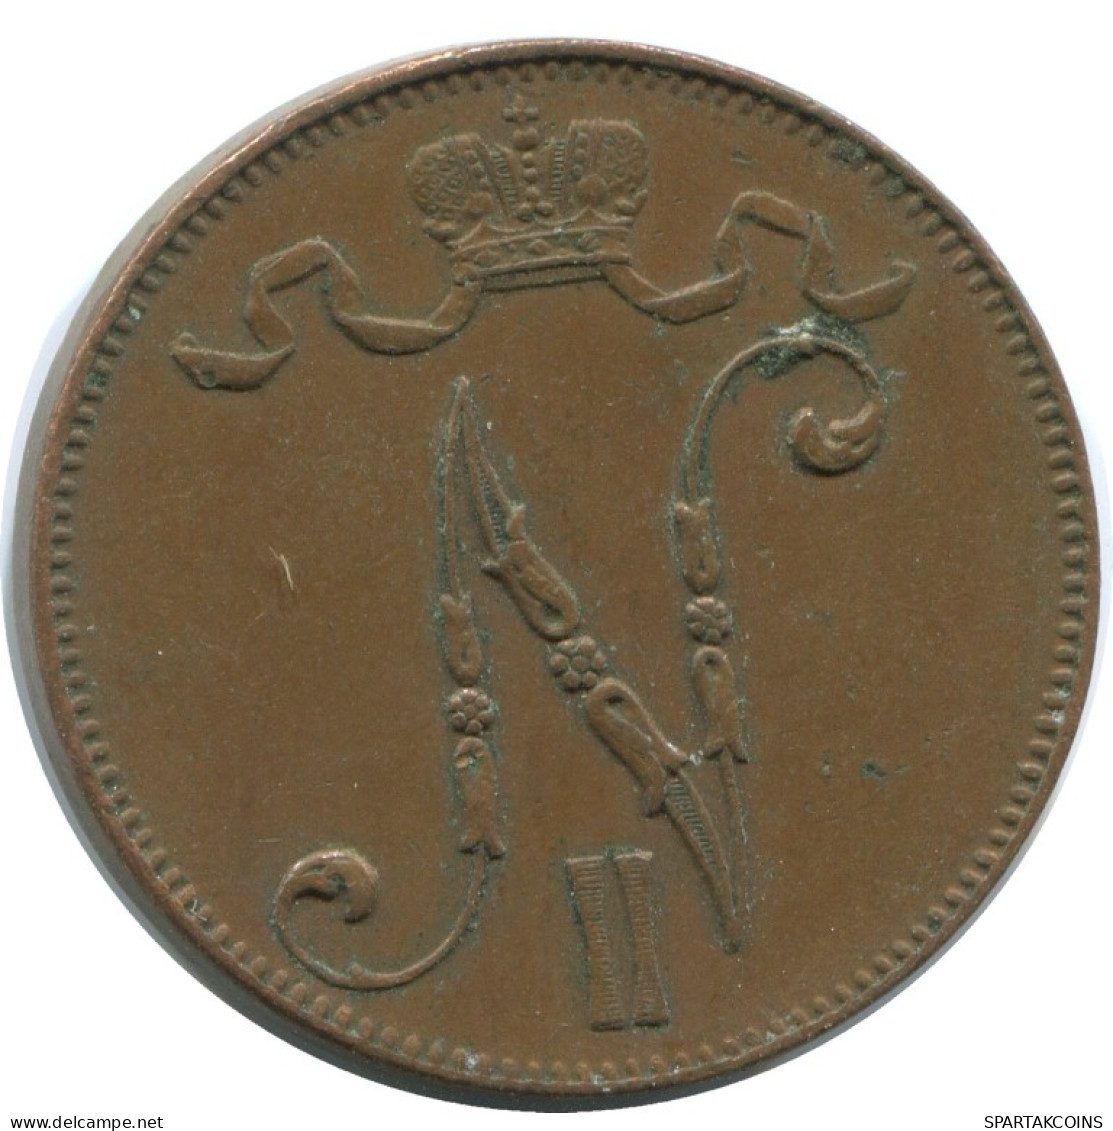 5 PENNIA 1916 FINLANDIA FINLAND Moneda RUSIA RUSSIA EMPIRE #AB205.5.E.A - Finland